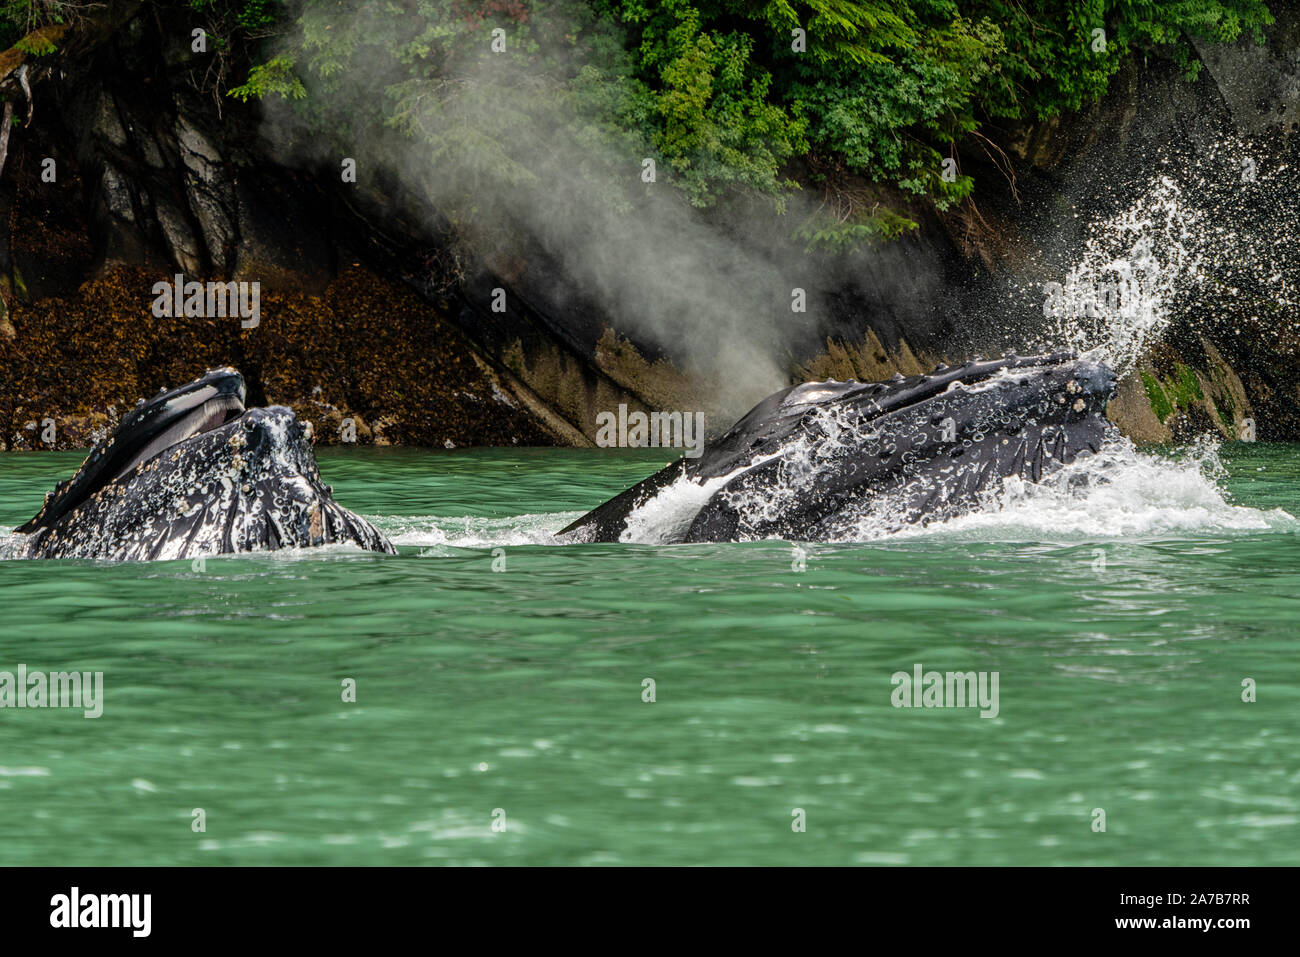 Deux baleines à bosse sur une jambe dans l'alimentation de l'eau d'alimentation vert de l'Inlet Knight, le territoire des Premières Nations, la forêt pluviale de Great Bear, en Colombie-Britannique, Ca Banque D'Images